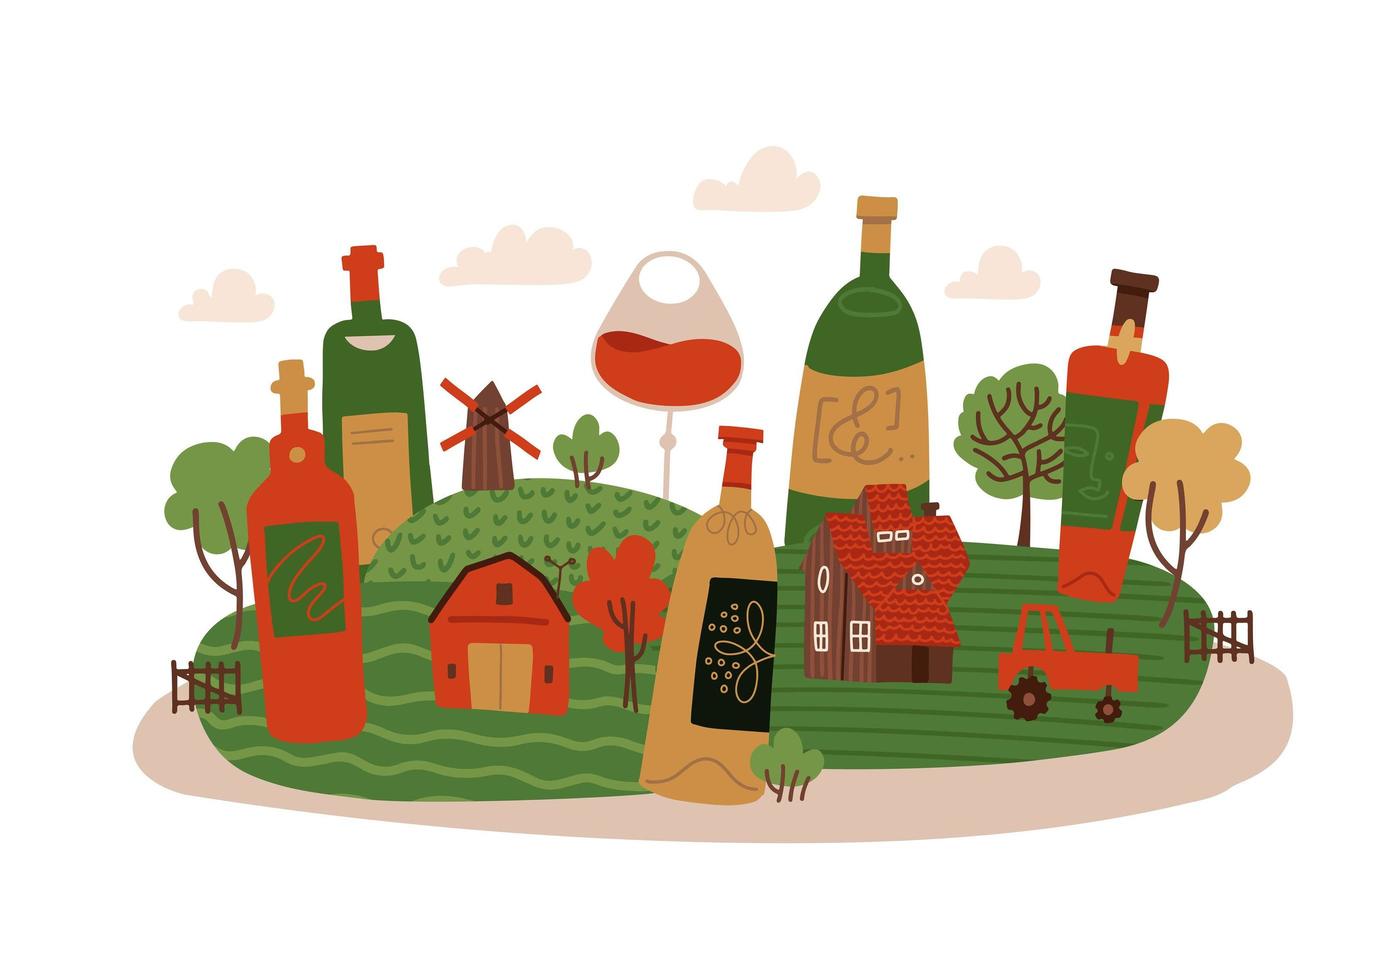 concepto cerativo aislado para el festival del vino nuevo en francia. botellas de vino en paisaje rural con pequeña casa, árboles y molino. ilustración dibujada a mano plana vectorial. vector